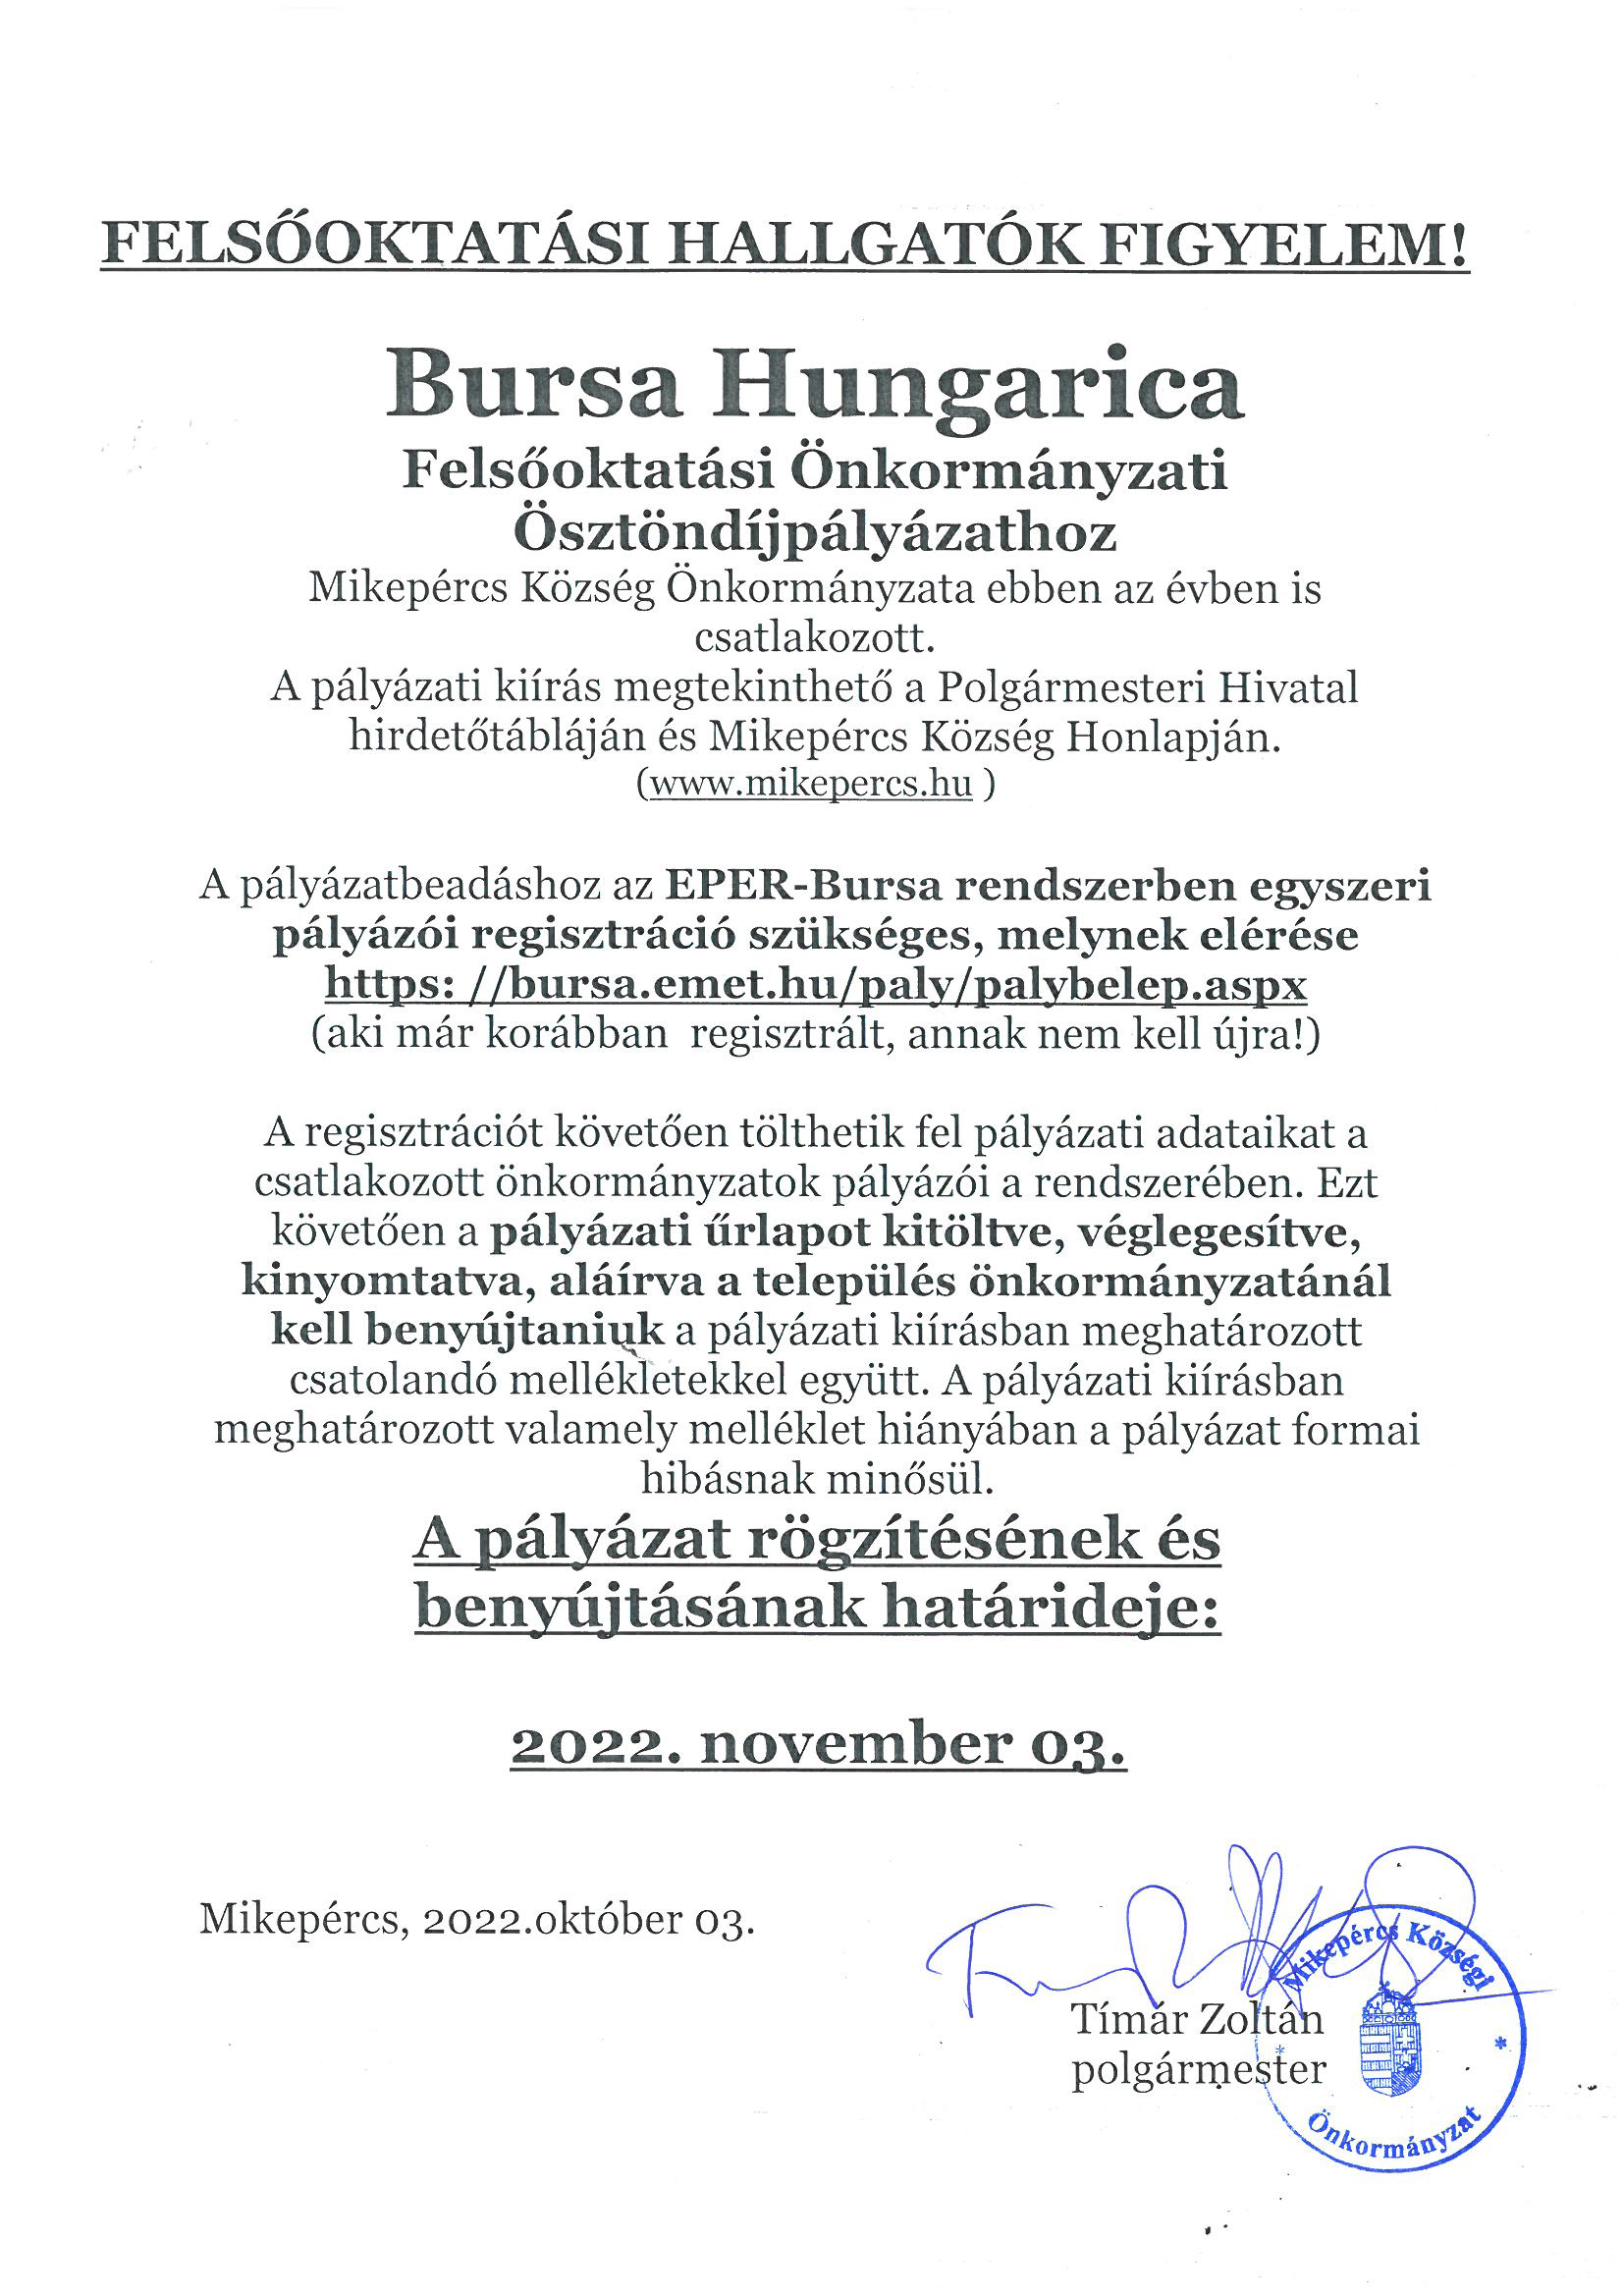 BURSA HUNGARICA ÖSZTÖNDÍJPÁLYÁZAT 2022